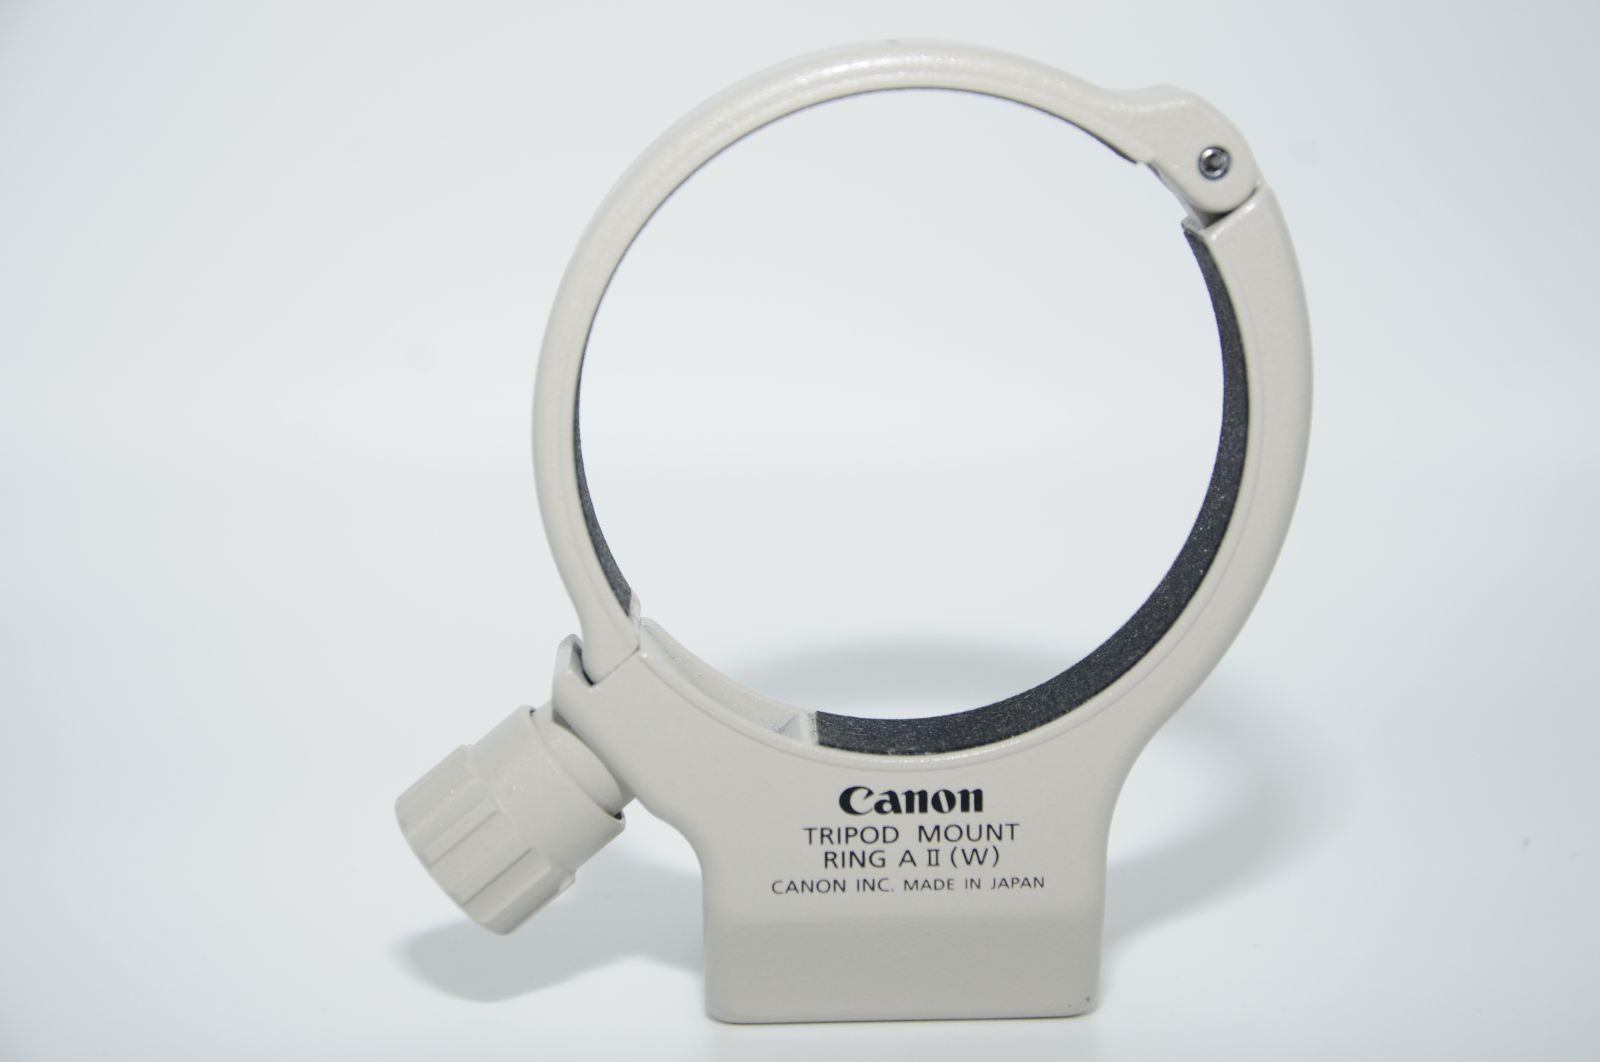 日本代理店正規品 Canon キヤノン リング式三脚座AII(W)ホワイト A2